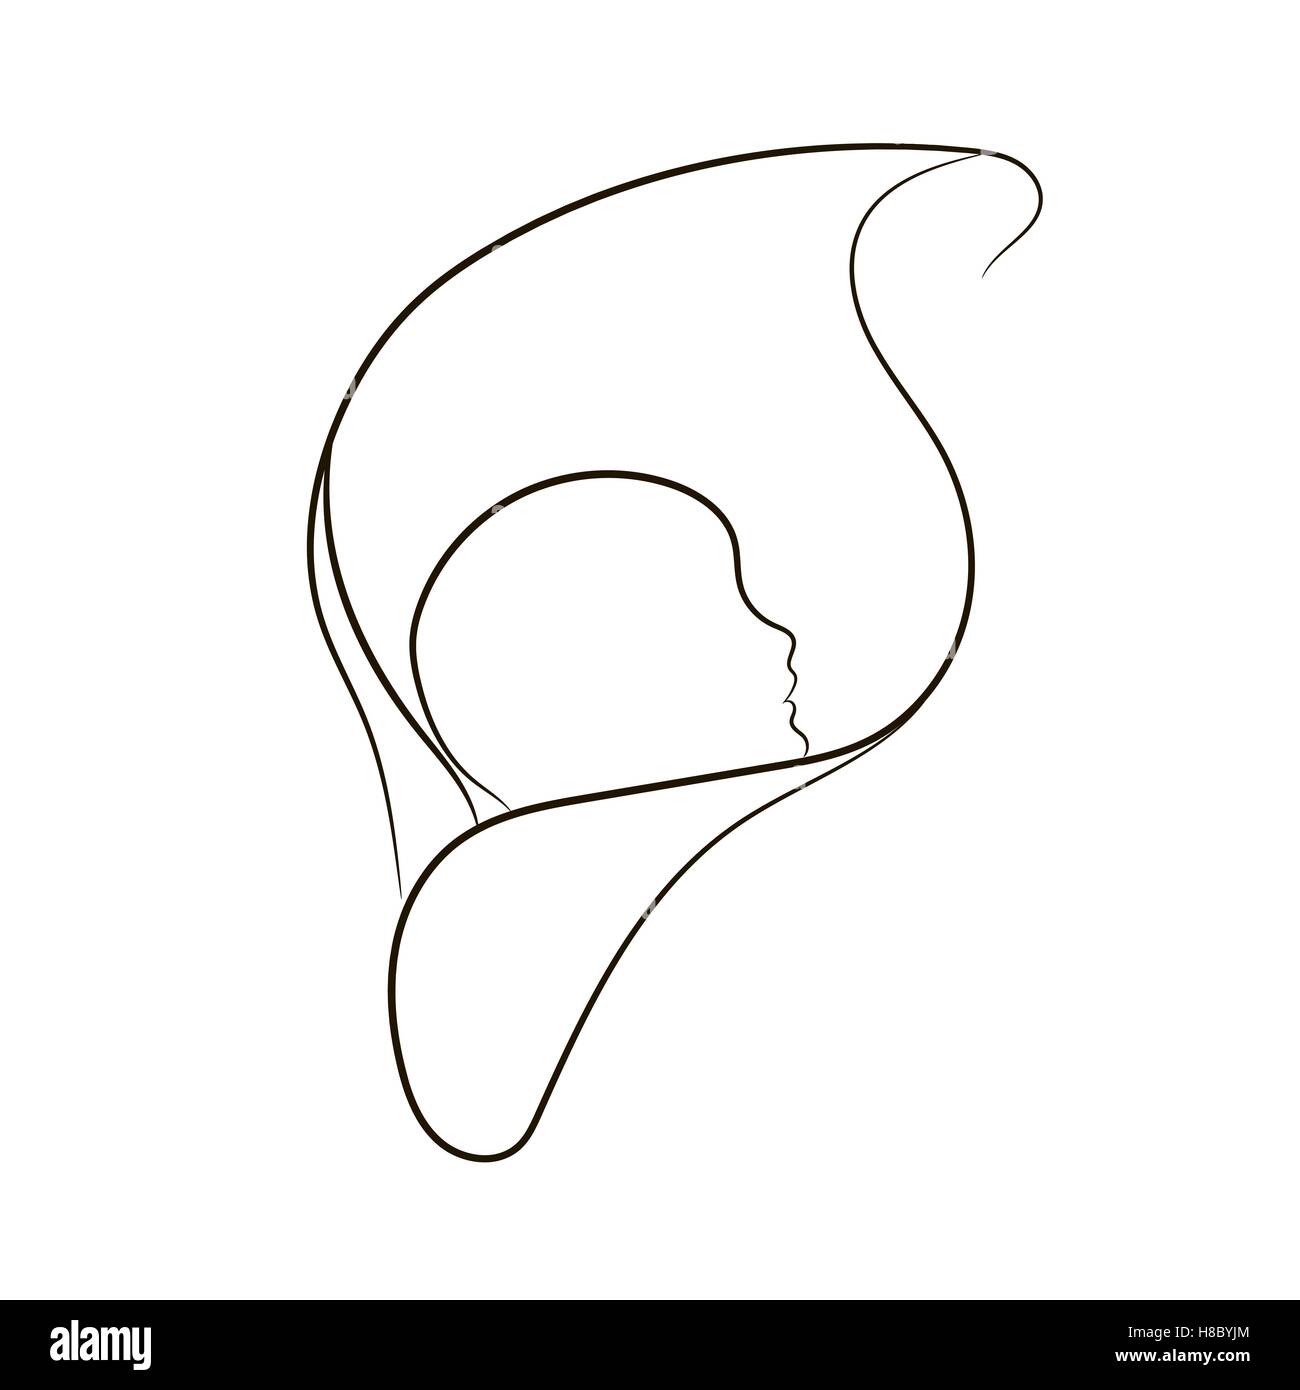 L'accouchement naturel, vecteur symbole dans des lignes simples Illustration de Vecteur